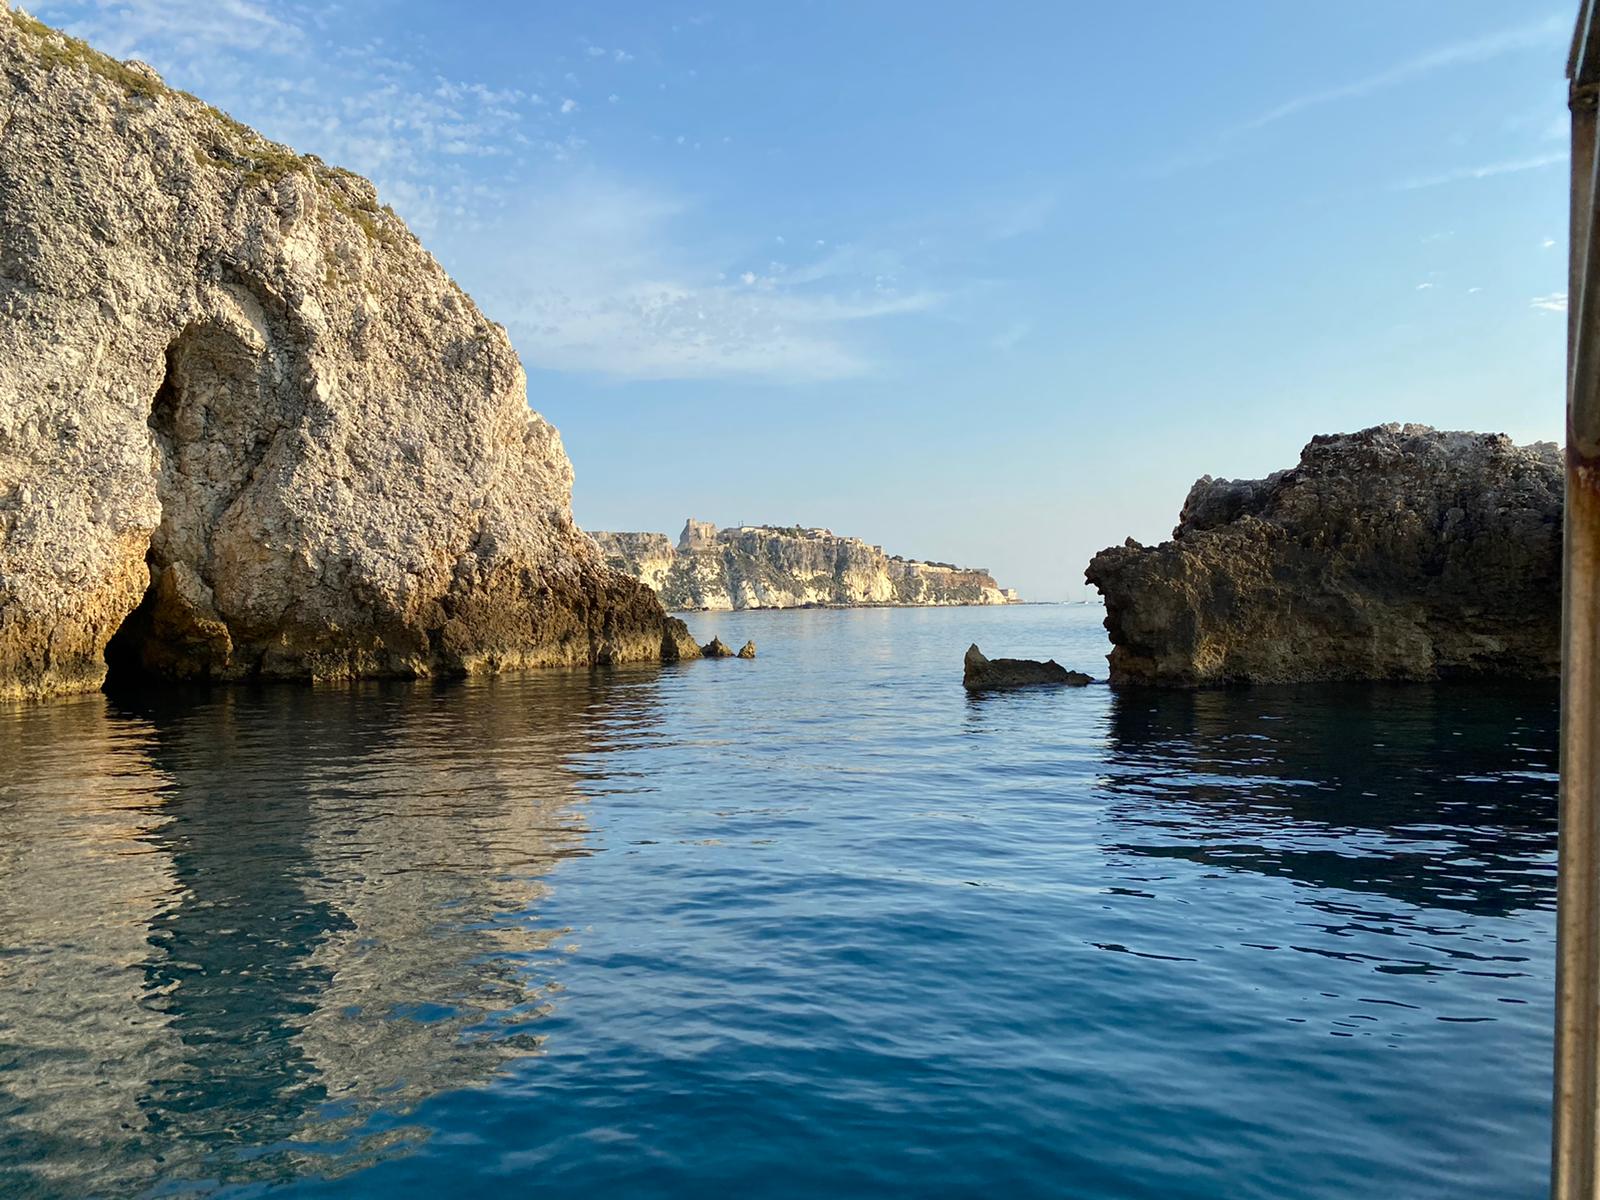 Galleria Bandiera Blu 2020 alle Isole Tremiti  Emiliano: “in Puglia grande risultato, siamo orgogliosi” - Diapositiva 6 di 8